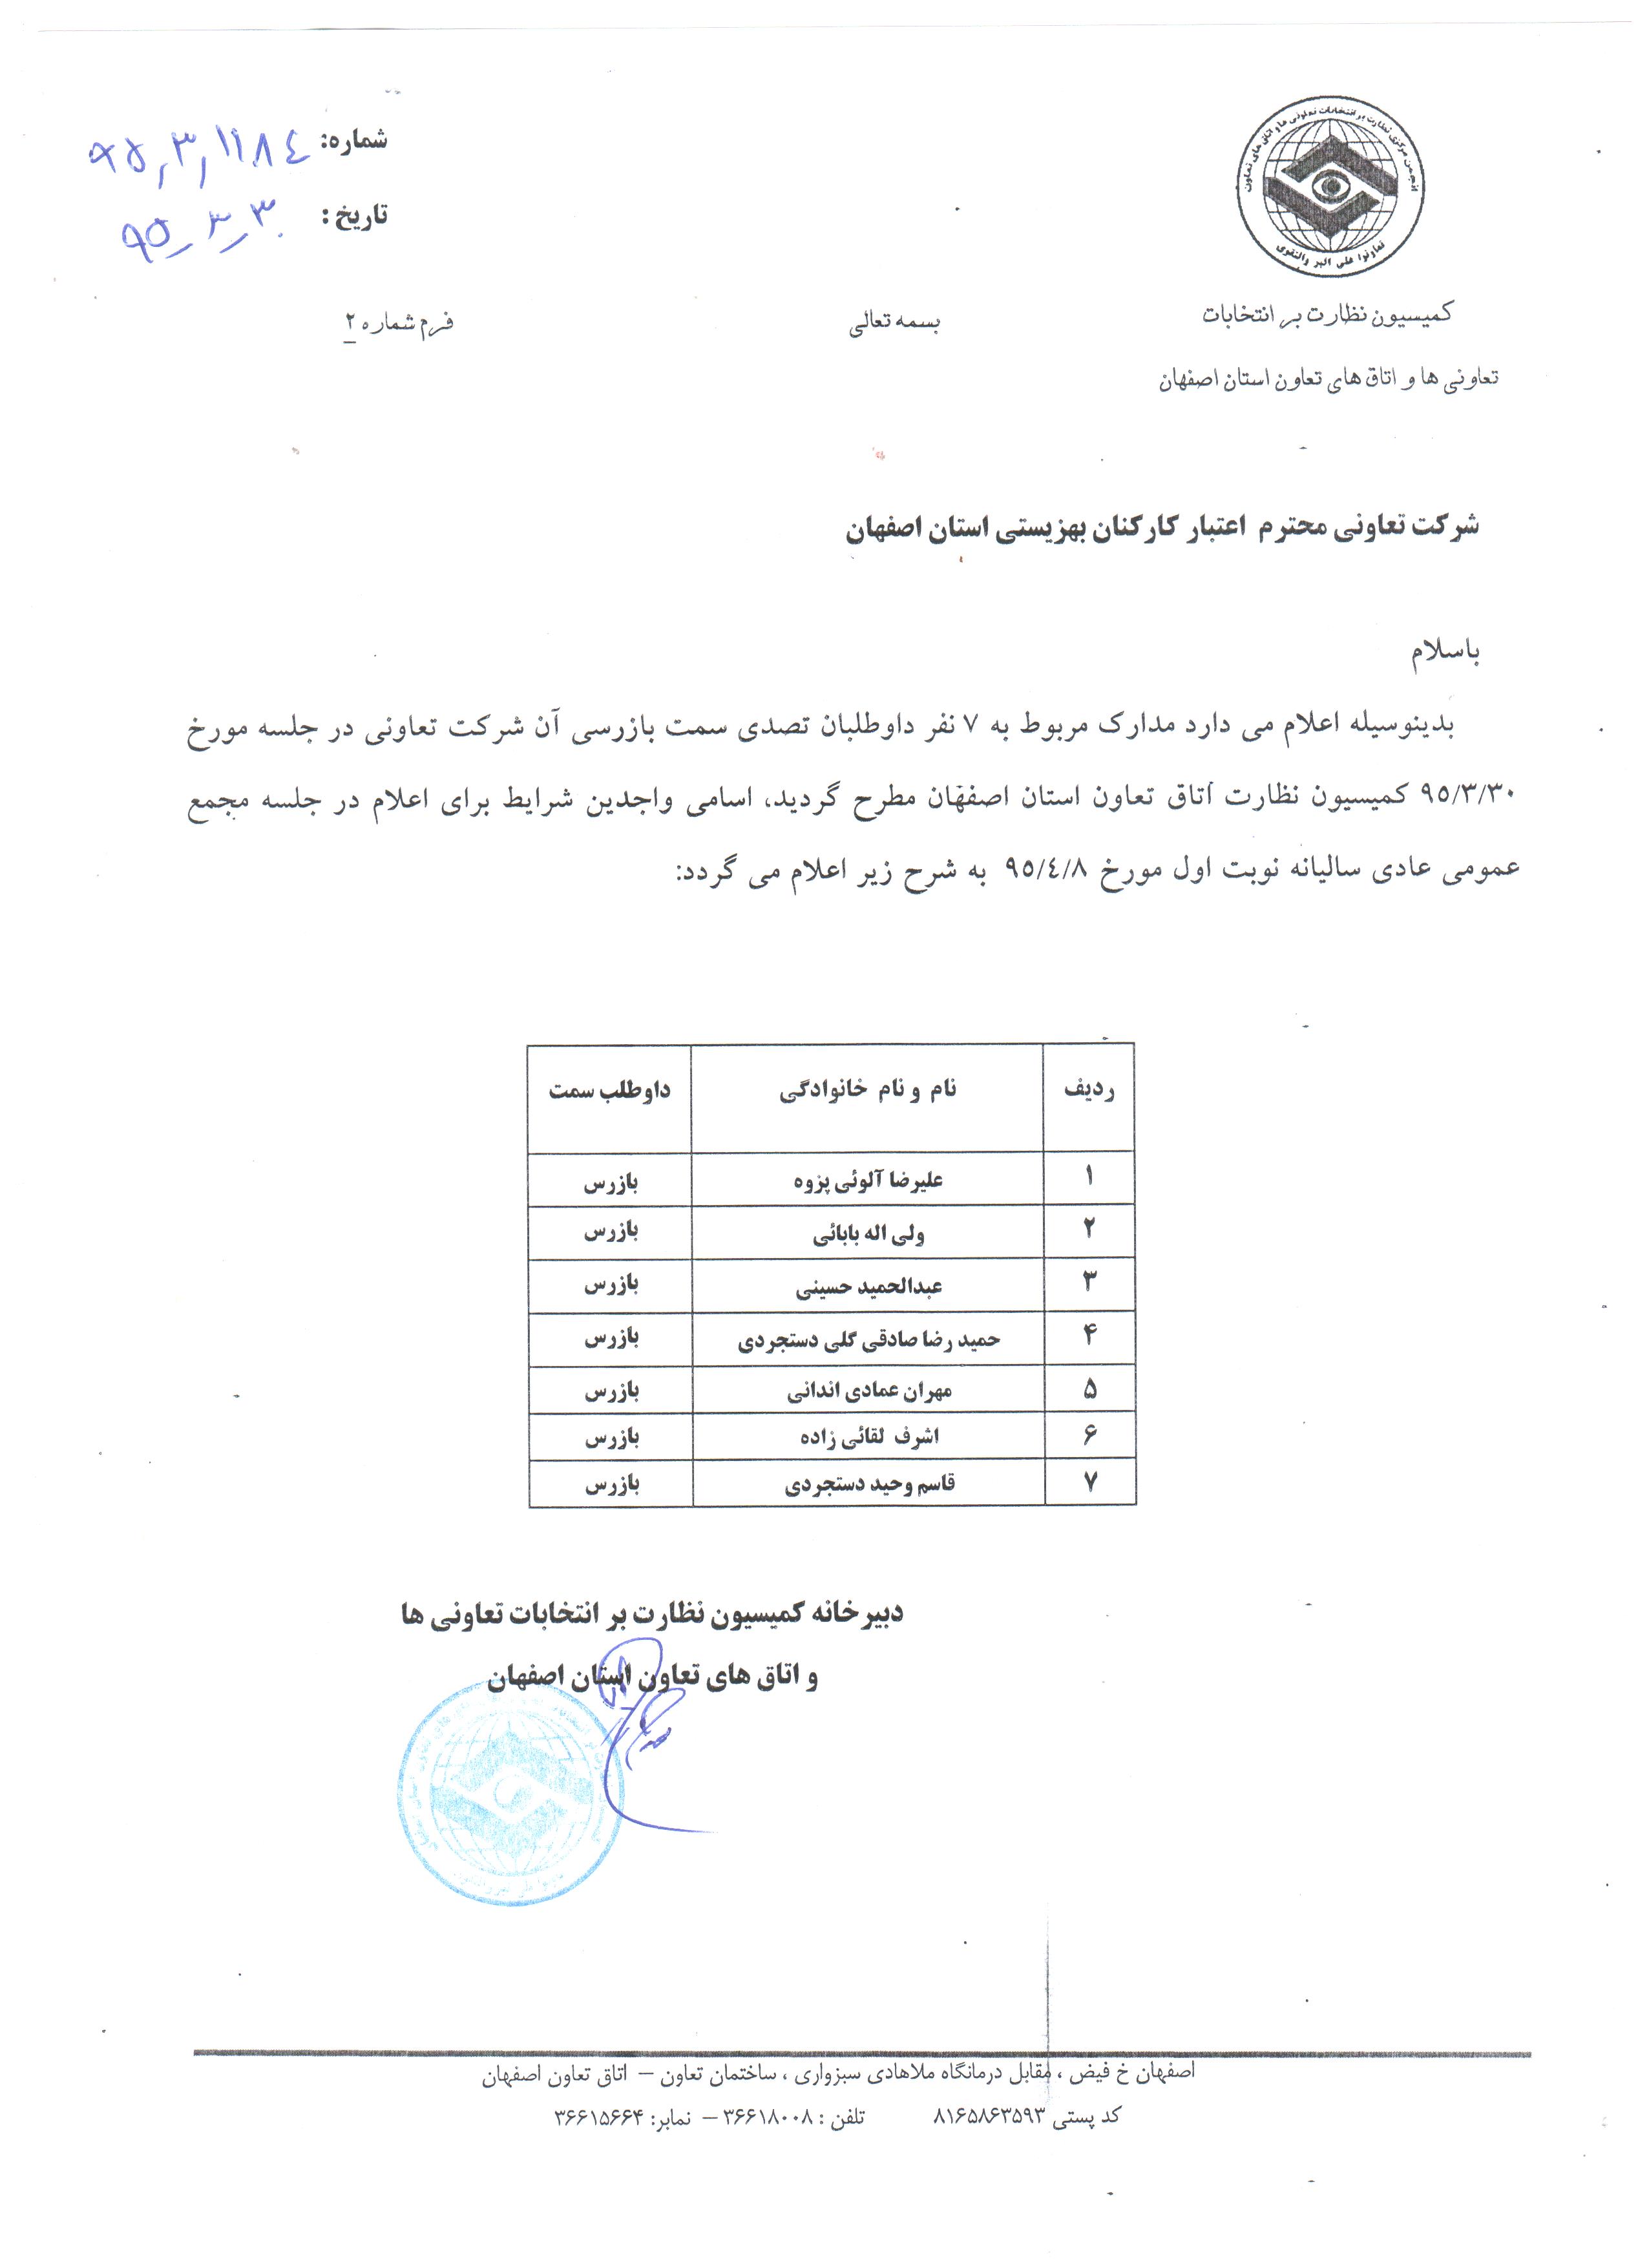 تاییدیه کاندیداهای بازرسی توسط کمیسیون نظارت بر انتخابات اتاق تعاون